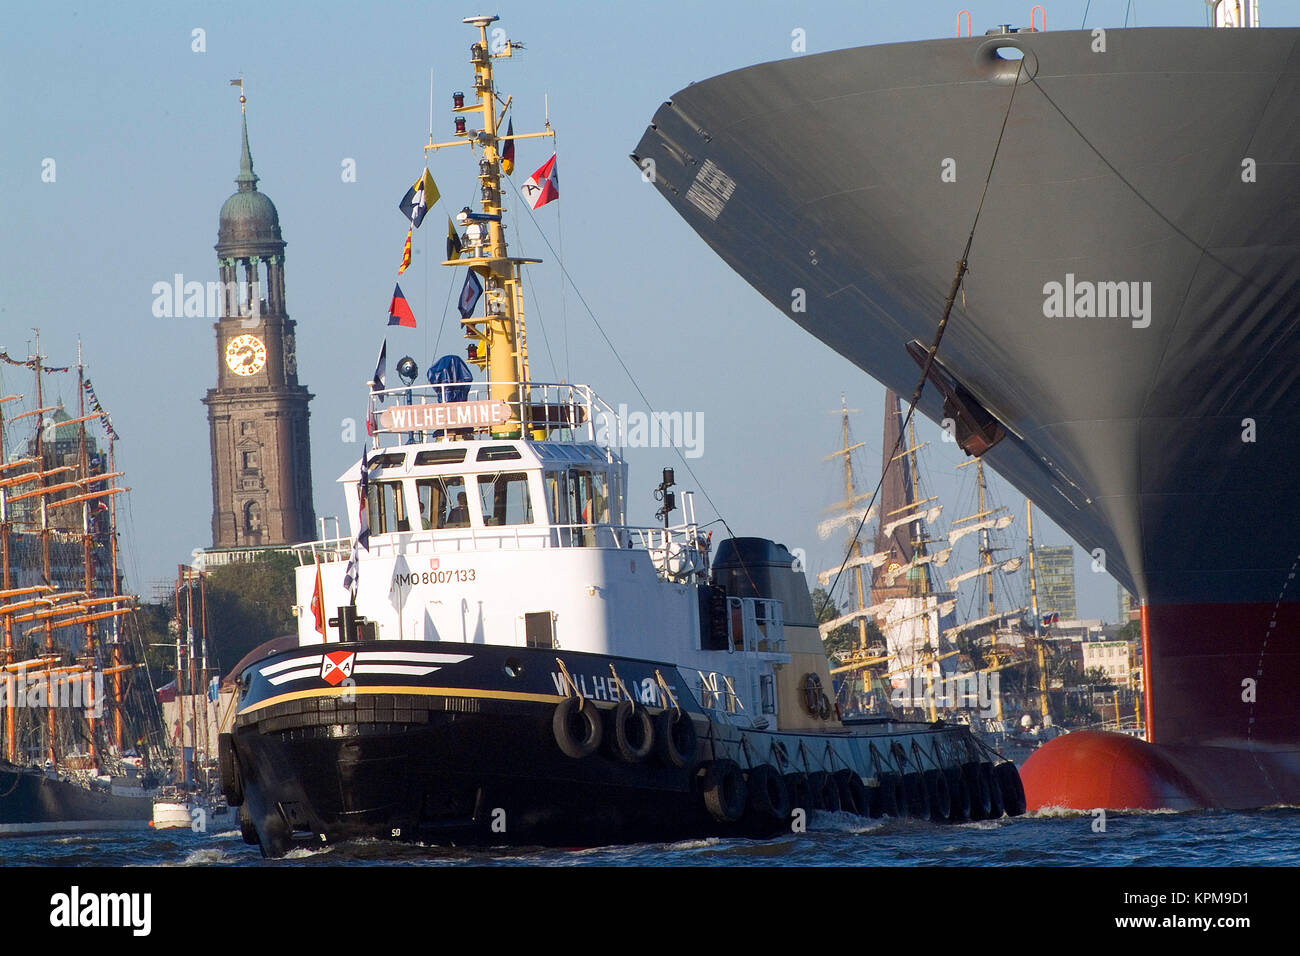 Hambourg, un des plus beaux et des plus populaires destinations touristiques au monde. Un remorqueur portuaire tire sur un paquebot dans le port. Banque D'Images